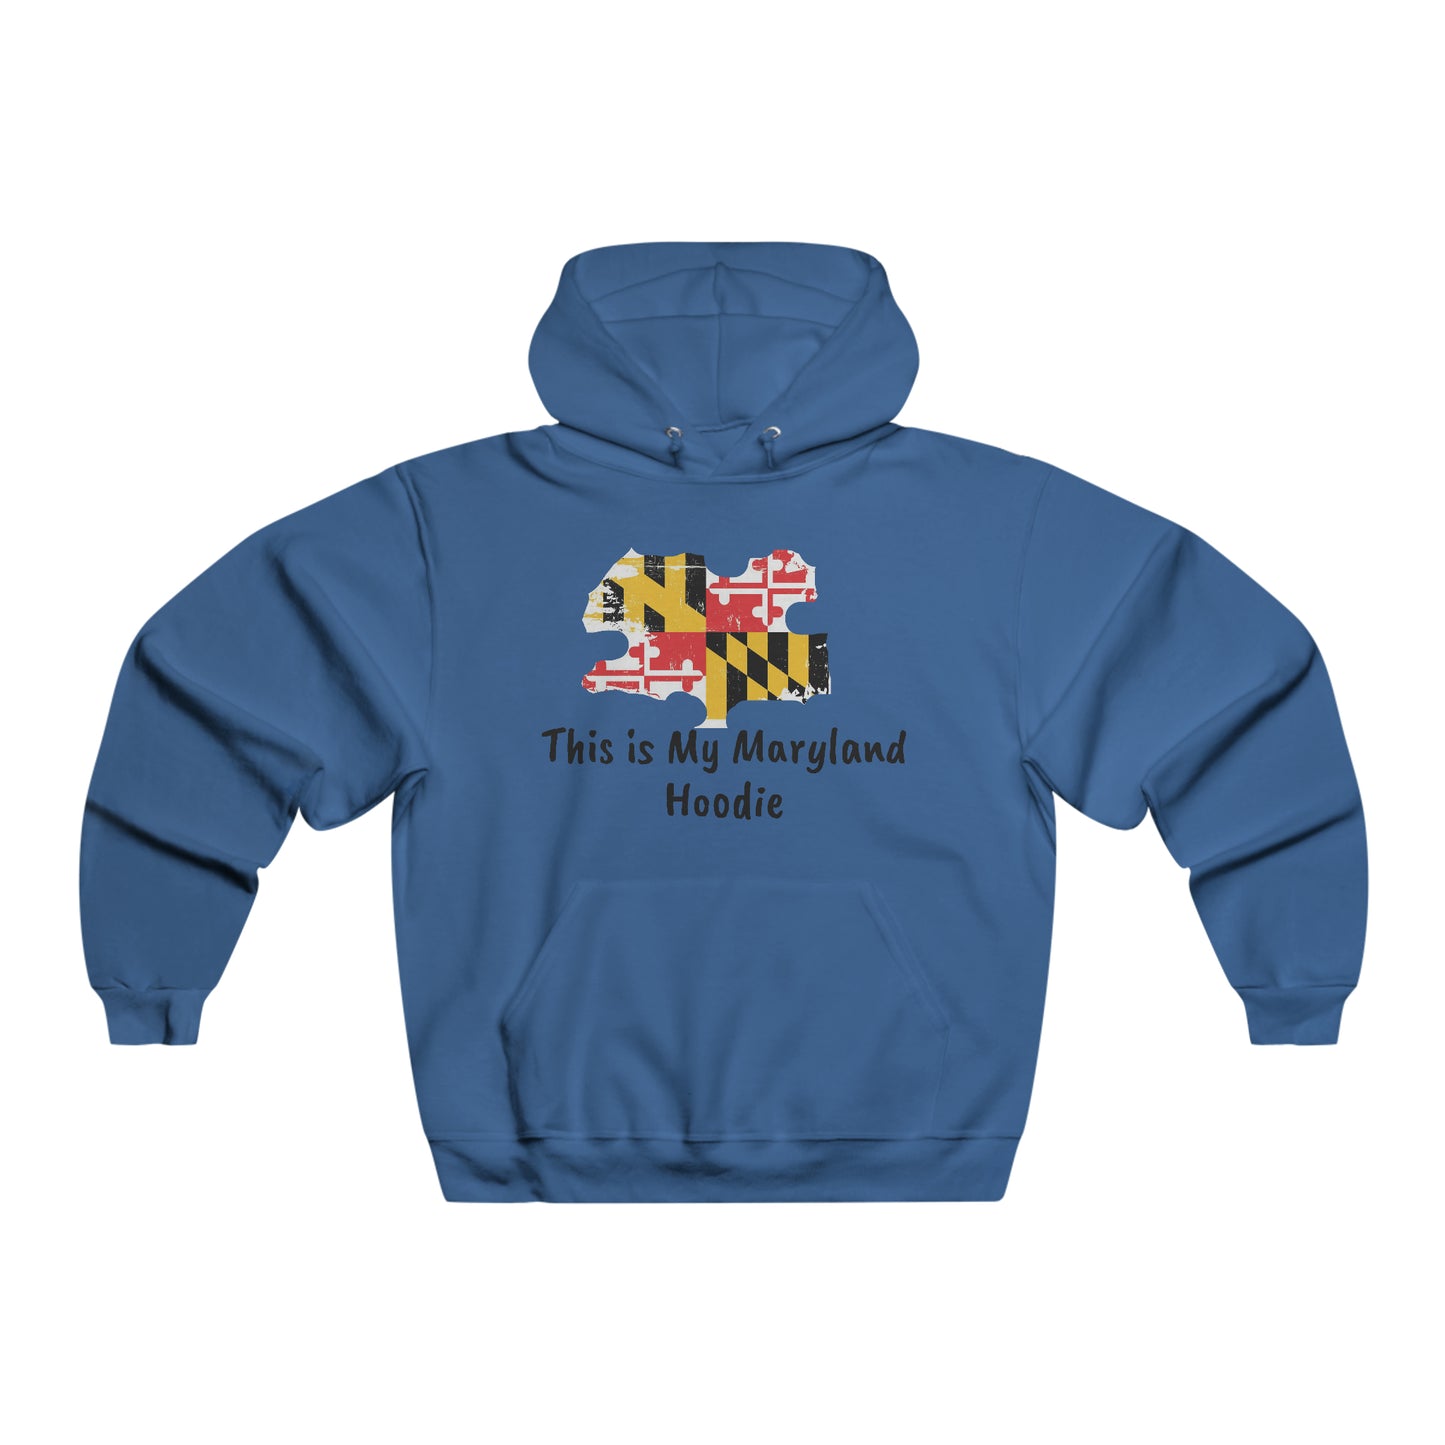 My Maryland Hoodie Hooded Sweatshirt